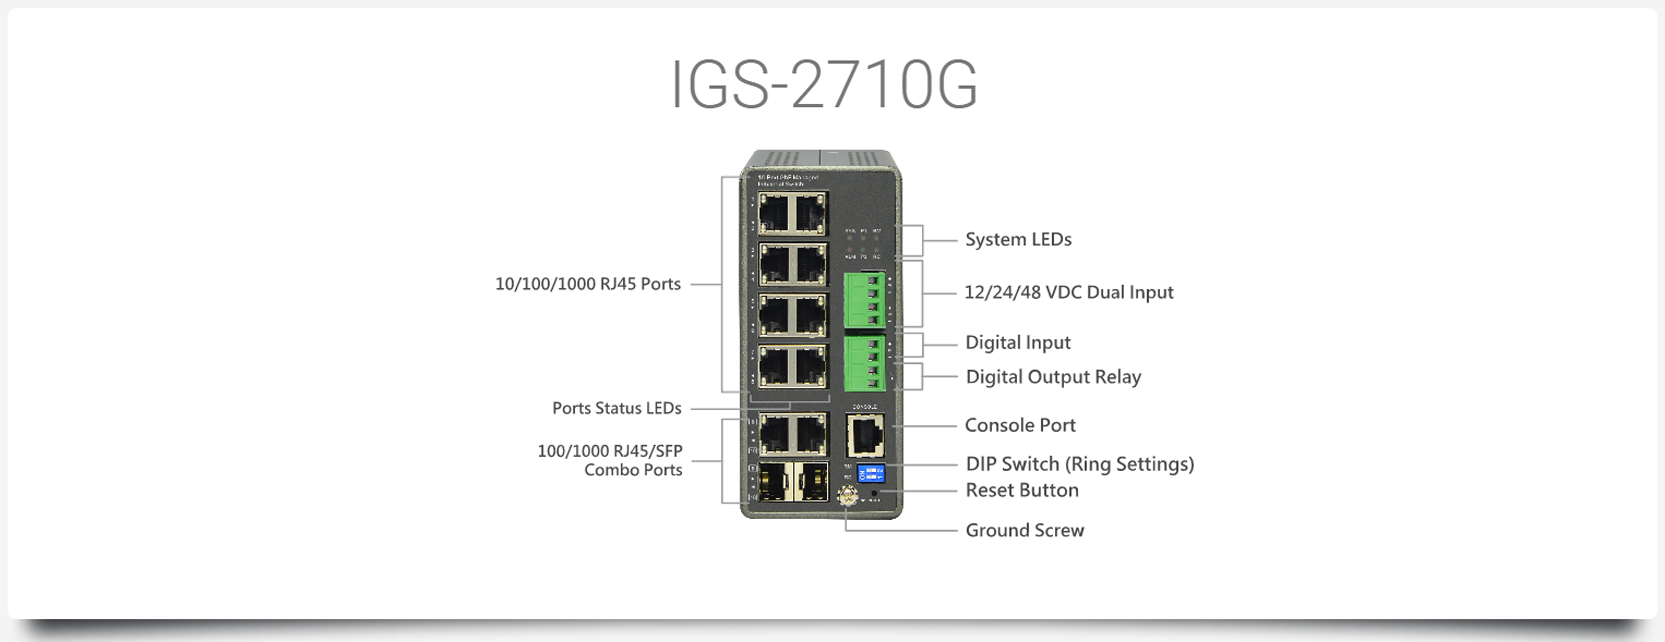 IGS-2710G